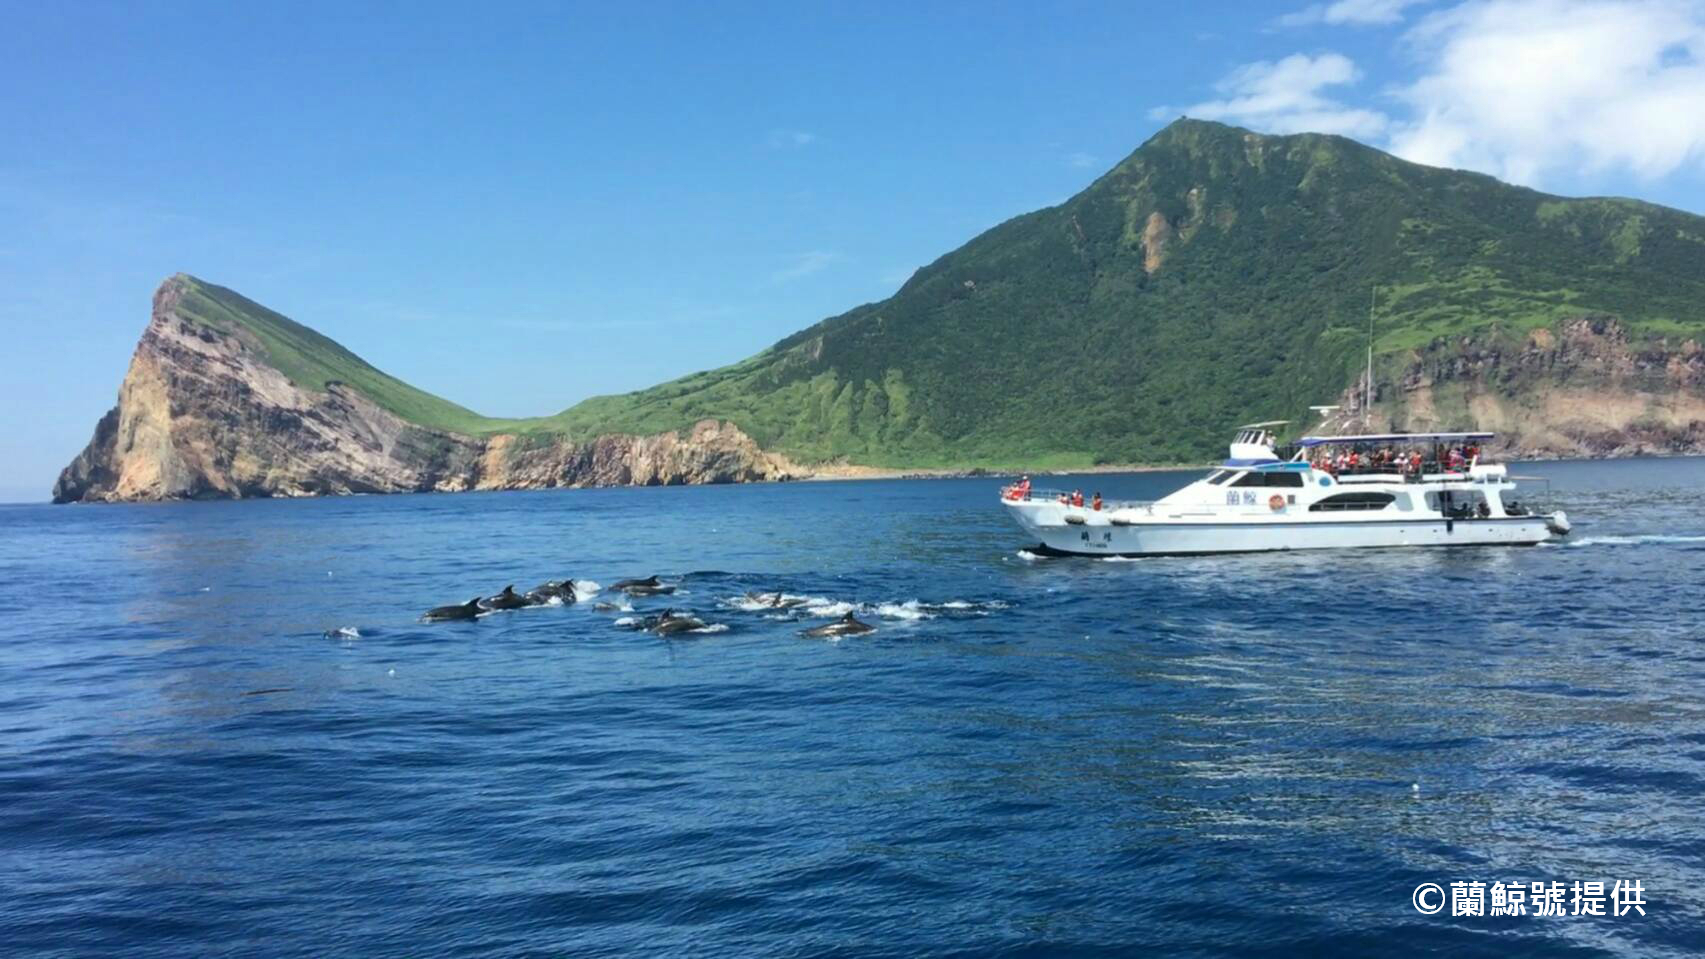 台湾でクジラを見よう 宜蘭 亀山島ホエールウォッチング一日ツアー 美麗 メイリー 台湾 まだ見たことのない台湾旅